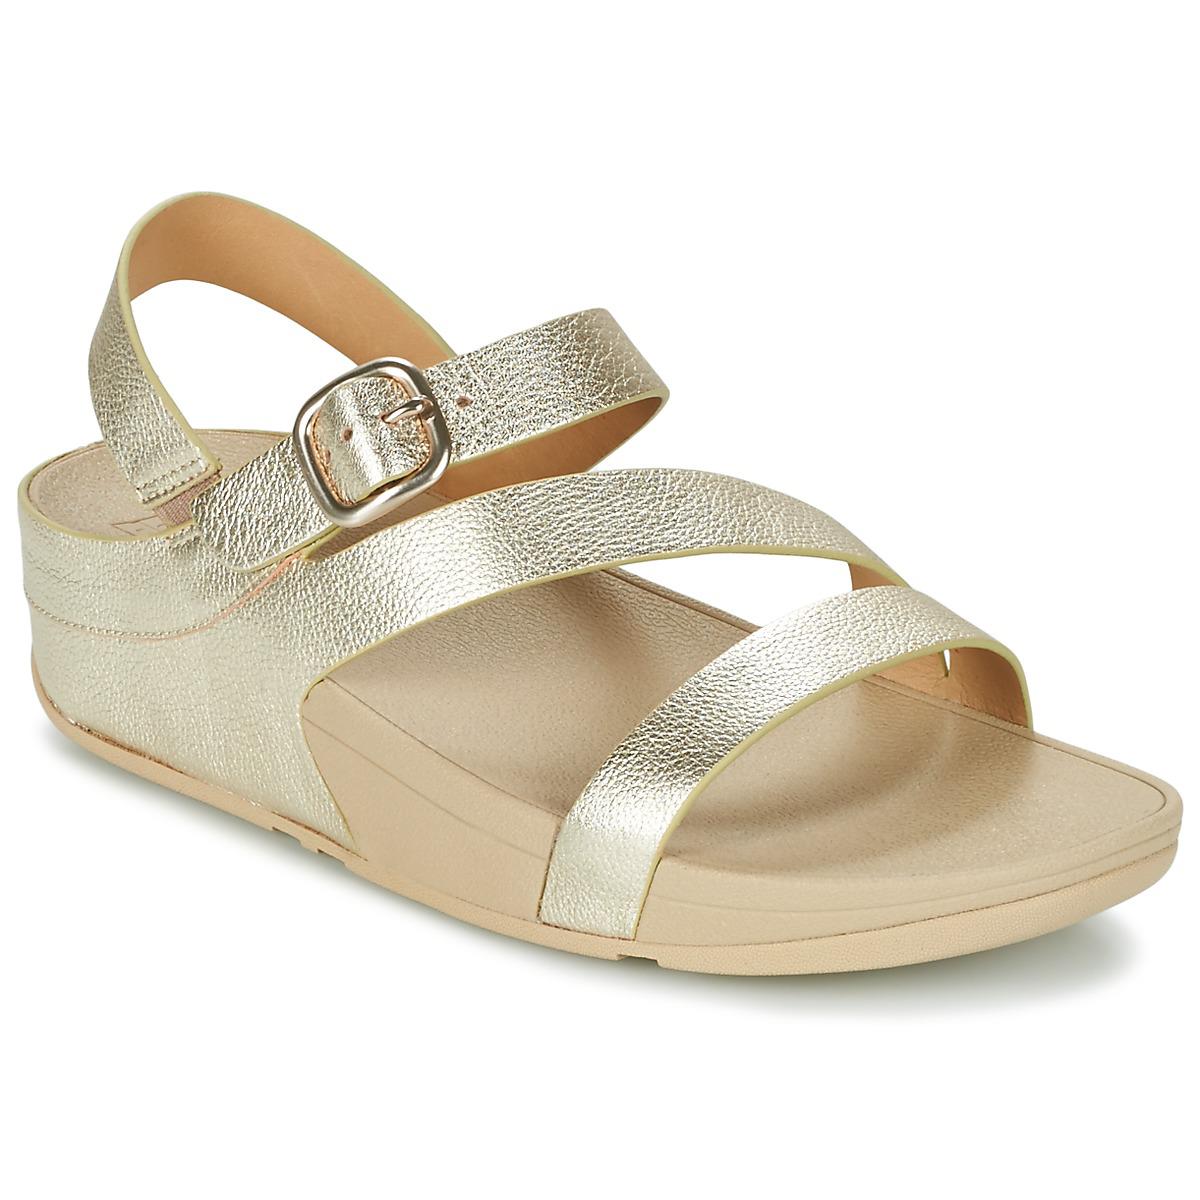 Fitflop The Skinny Zcross Sandal Women's Sandals In Gold in Metallic - Lyst